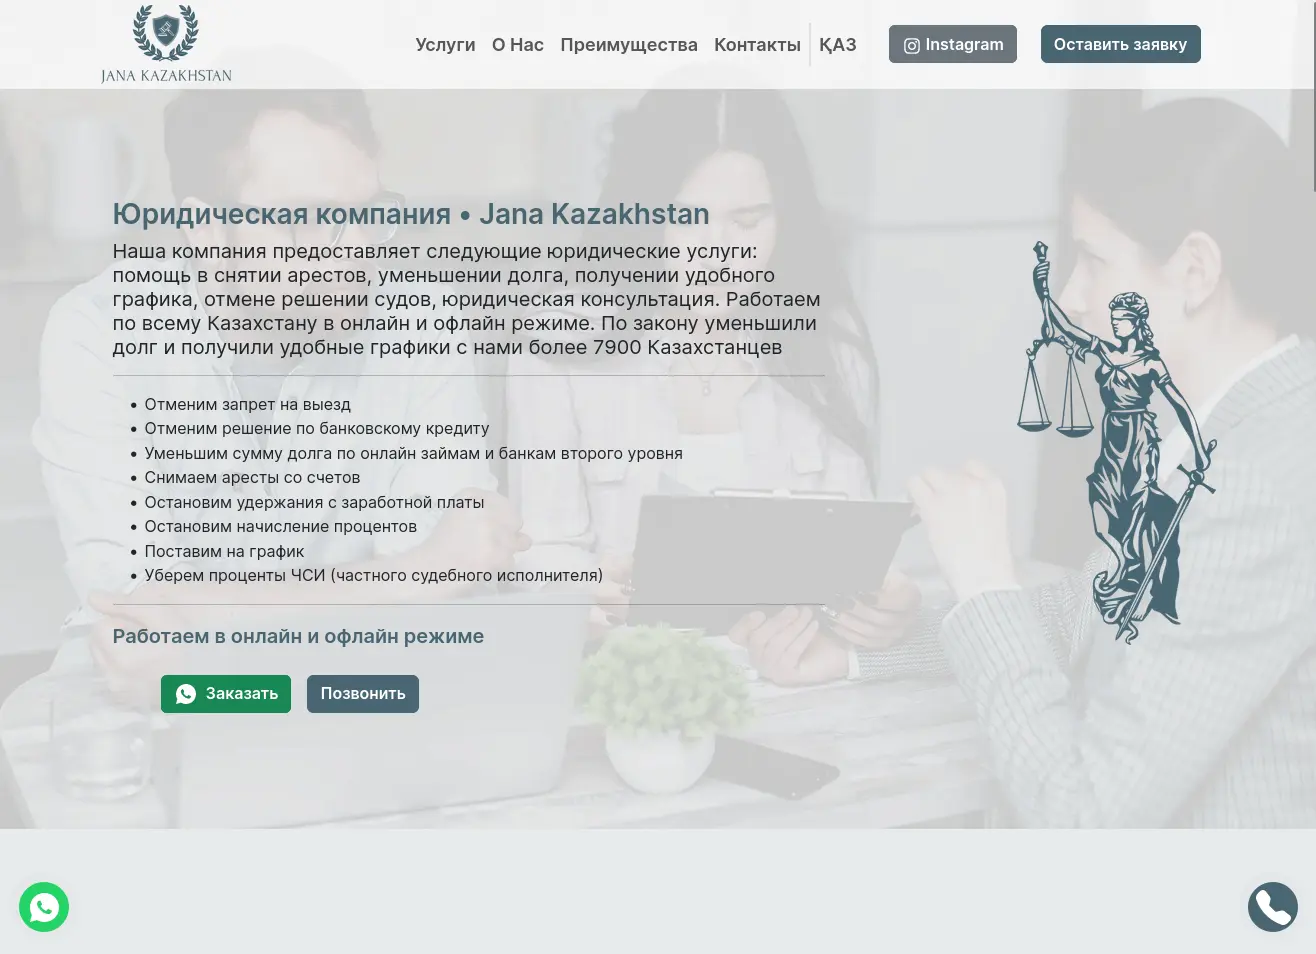 Jana Kazakhstan - Юридическая компания